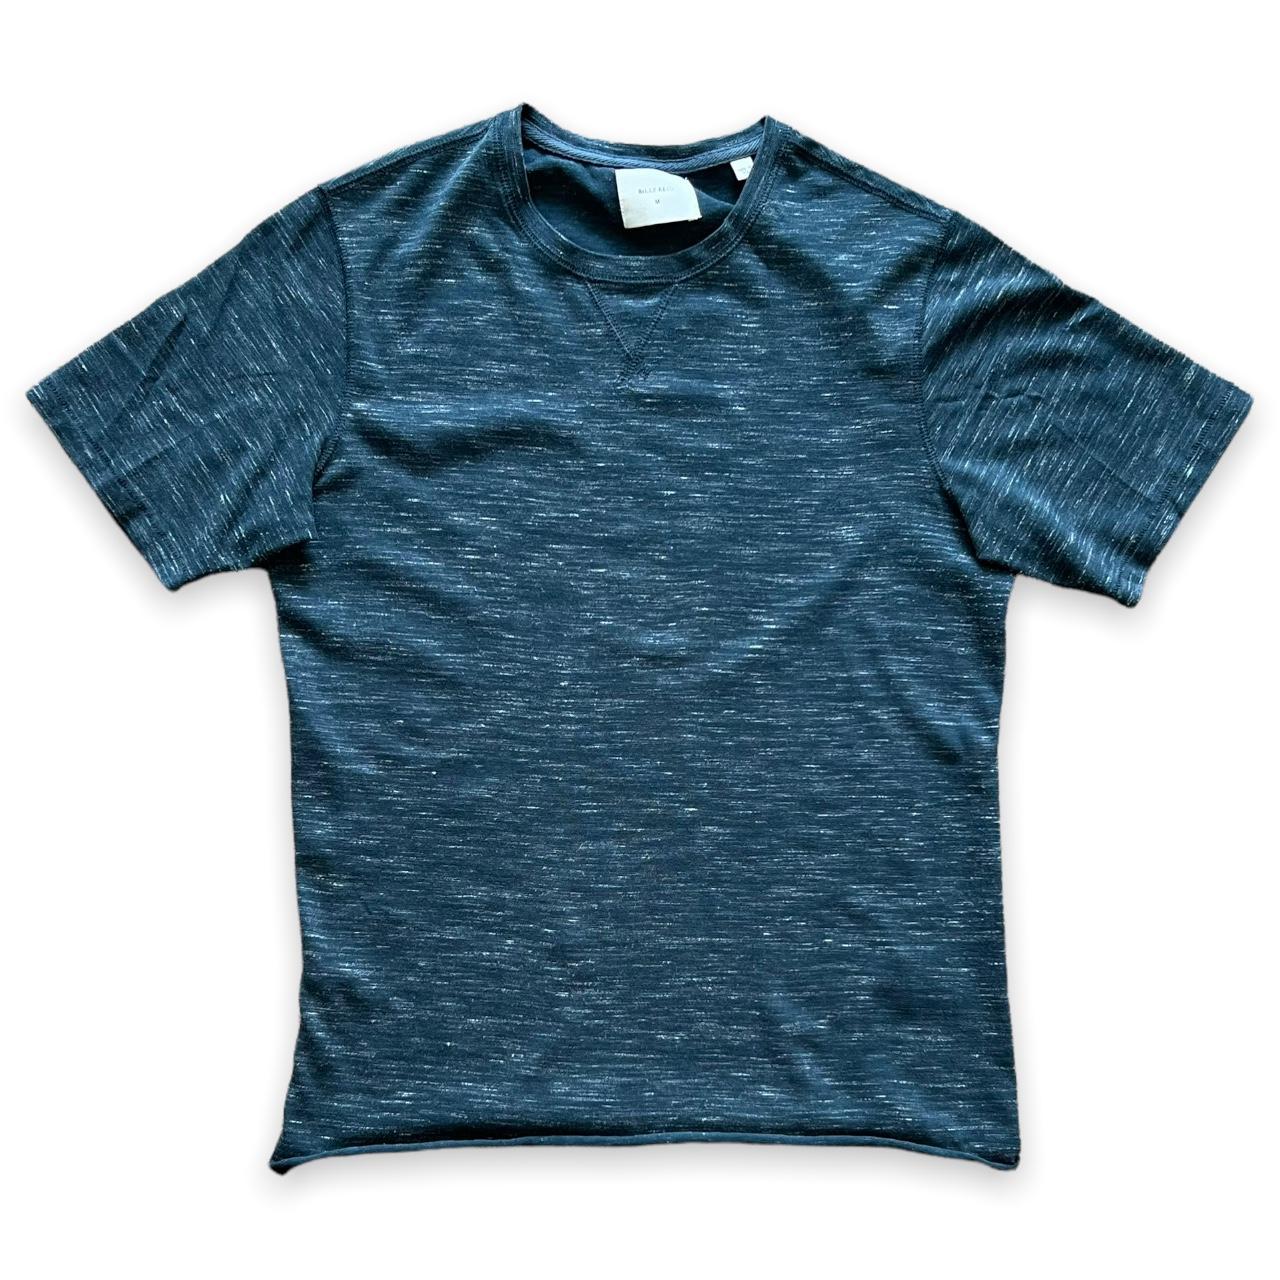 Barney's Men's Blue T-shirt